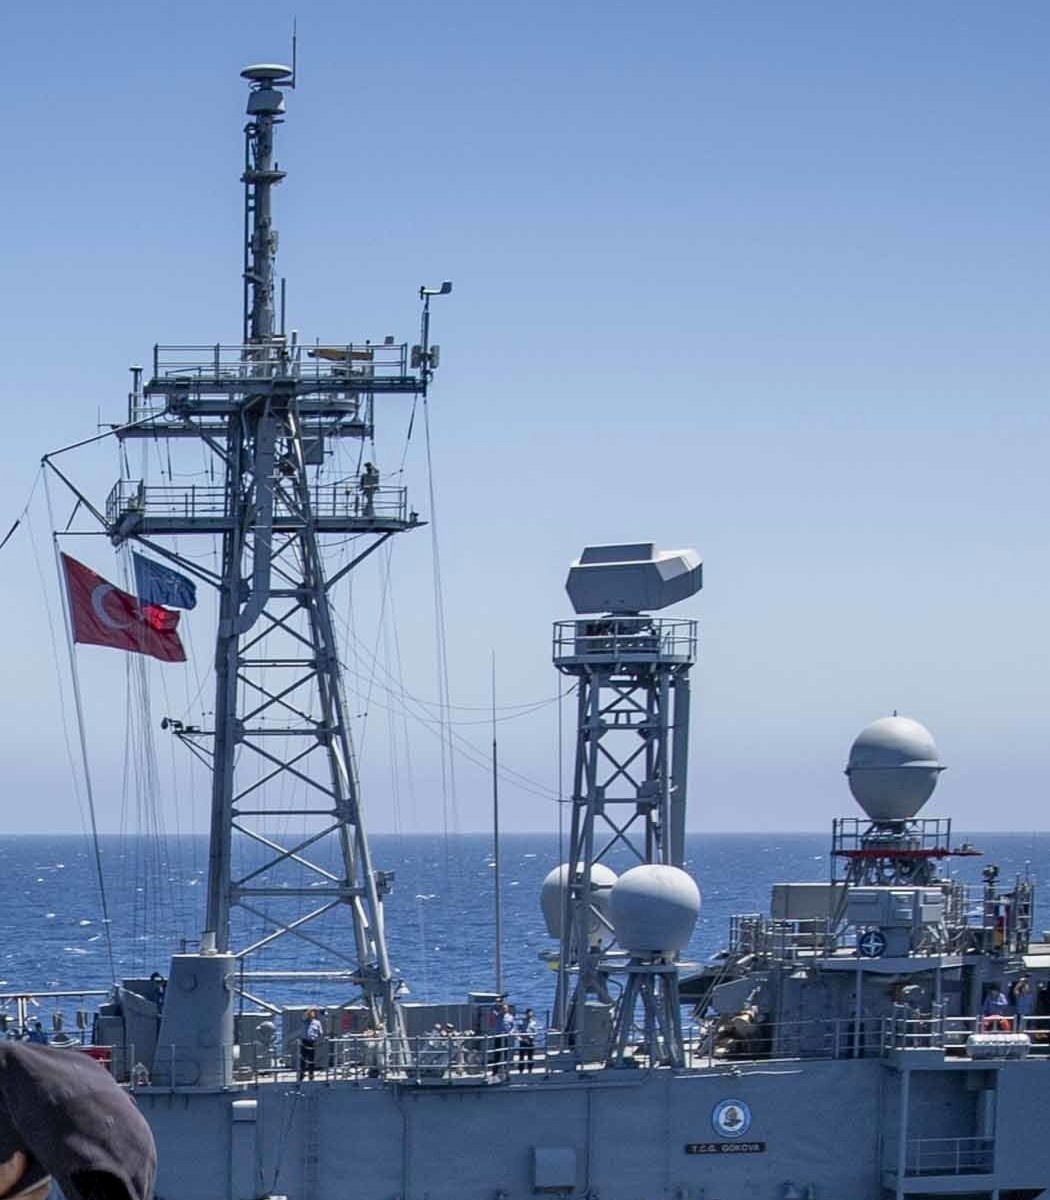 gabya g-class perry frigate ffg turkish navy türk deniz kuvvetleri mast antenna radar details